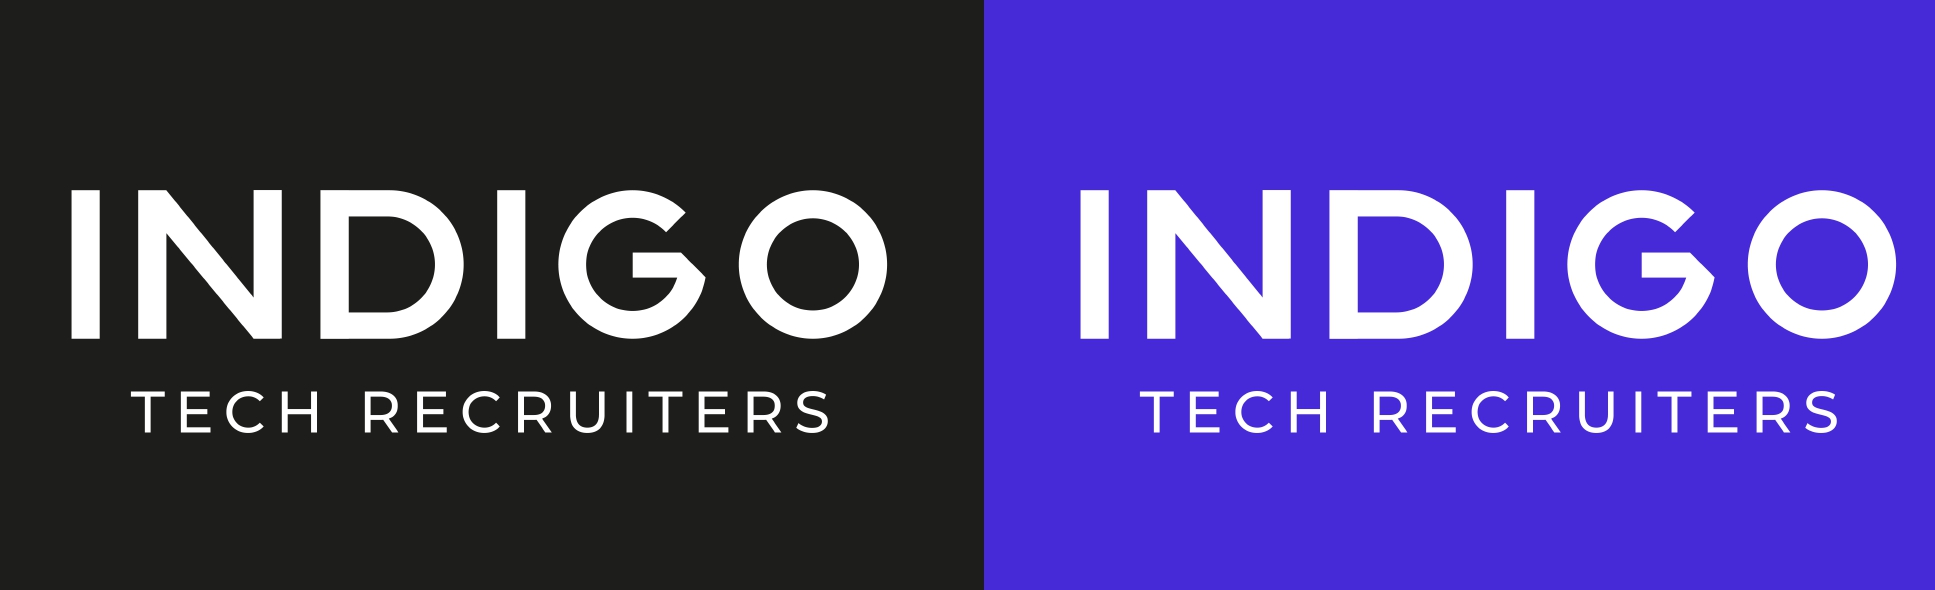 New INDIGO identity - logo